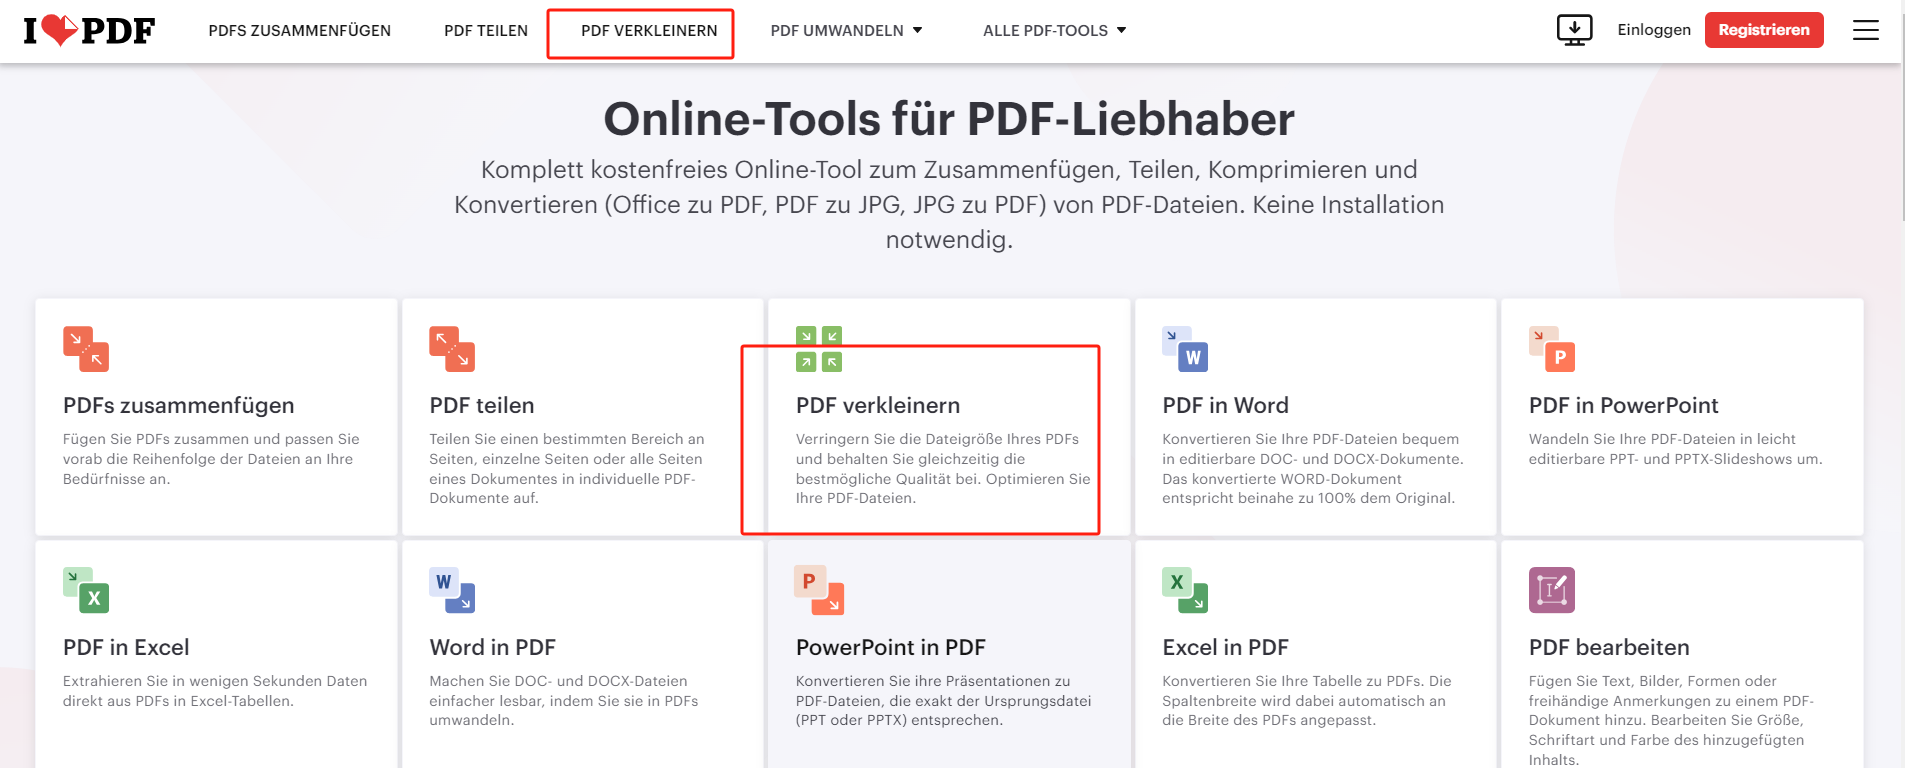 Gehen Sie auf ilovepdf.com/de, und wählen Sie das Tool „PDF verkleinern“.